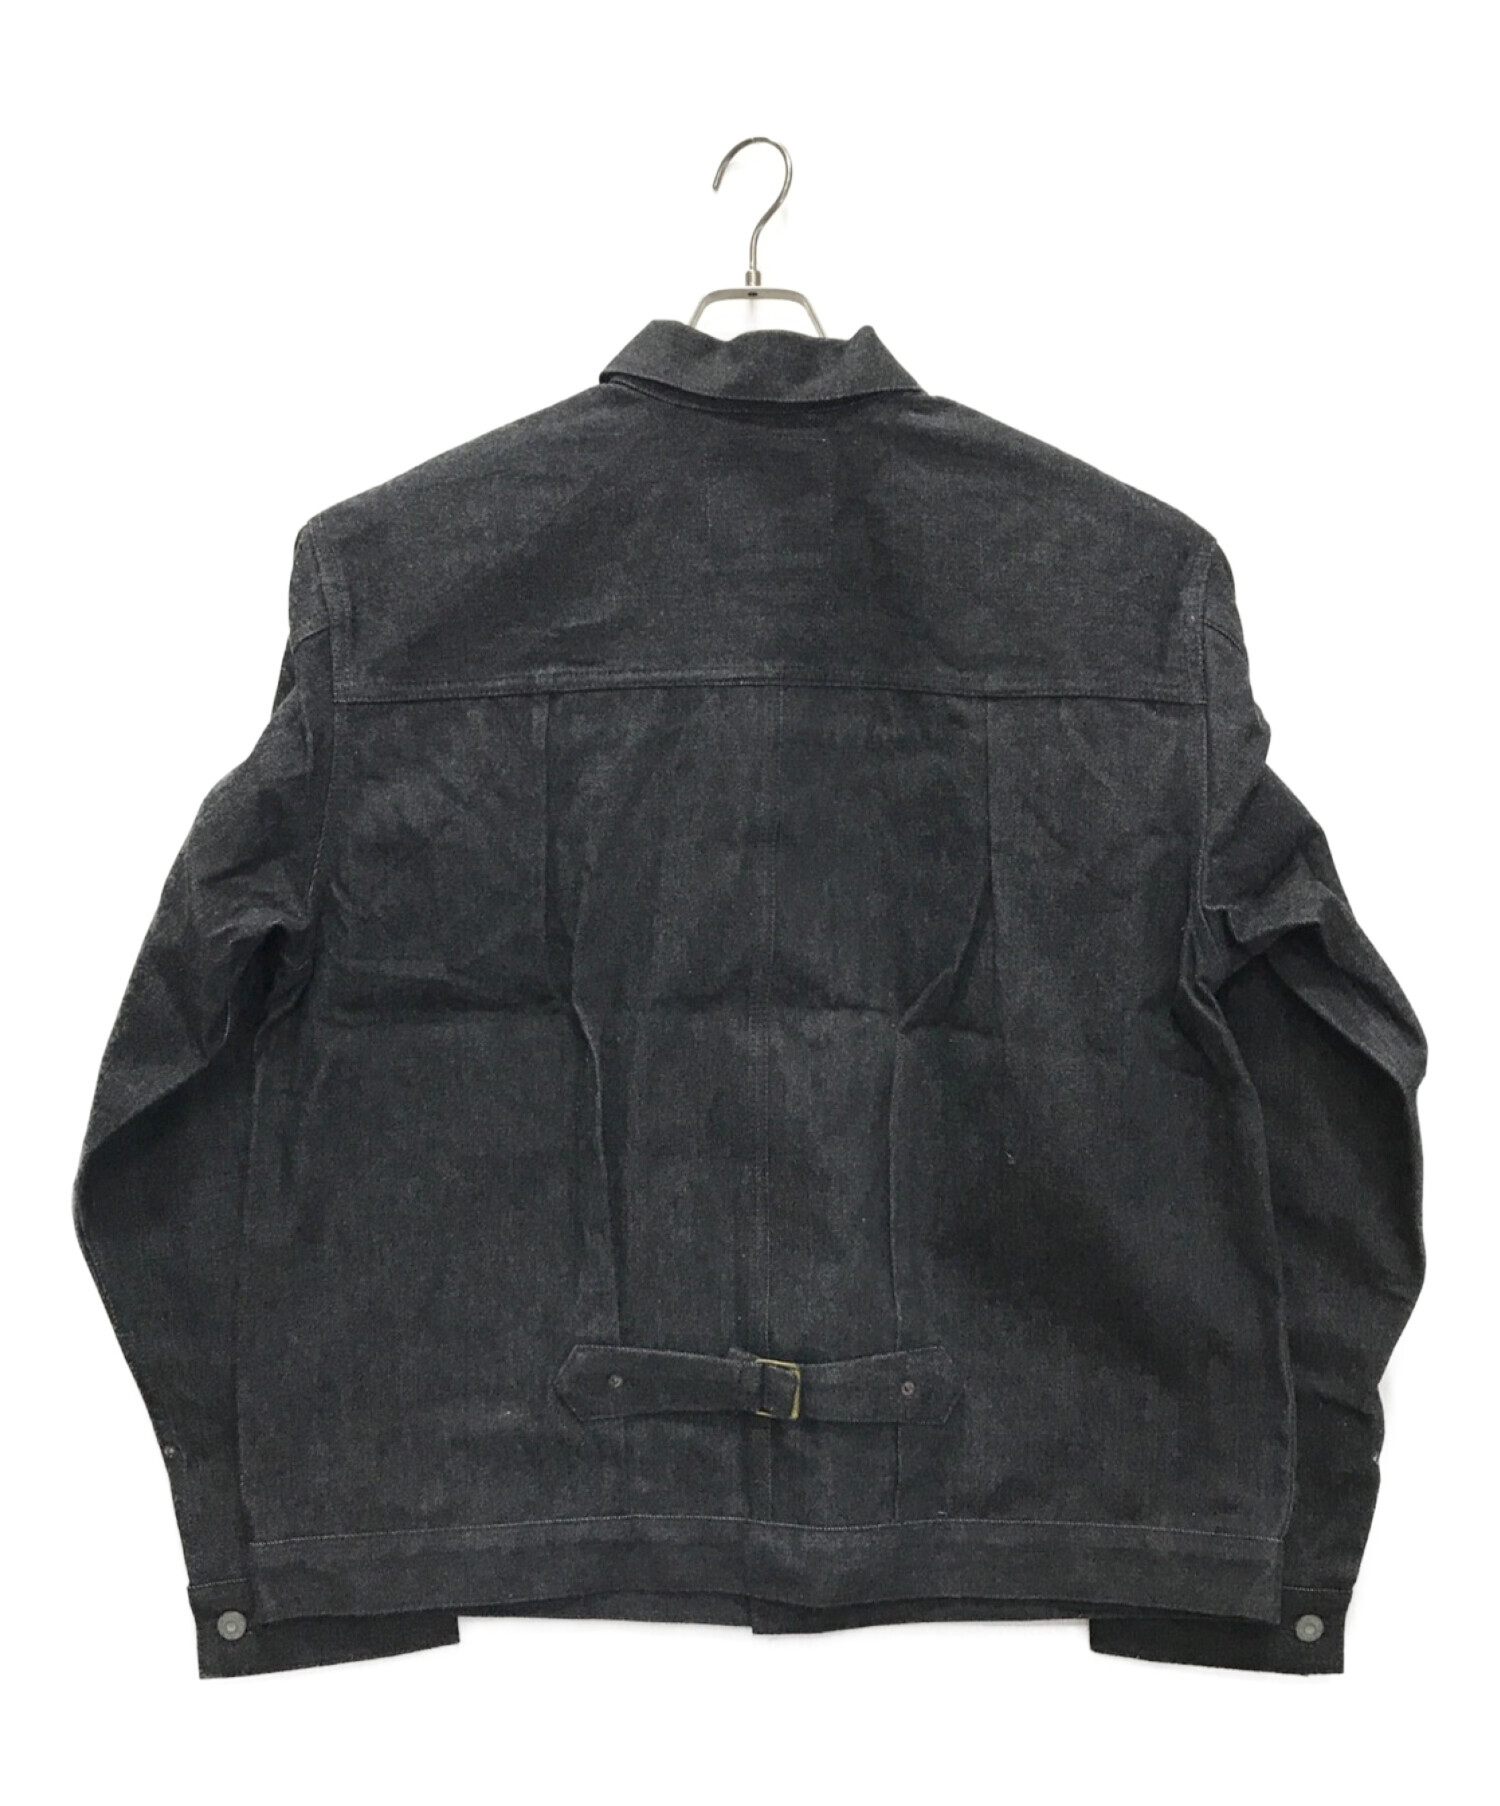 BONCOURA (ボンクラ) Denim Jacket 1st インディゴ サイズ:40 未使用品